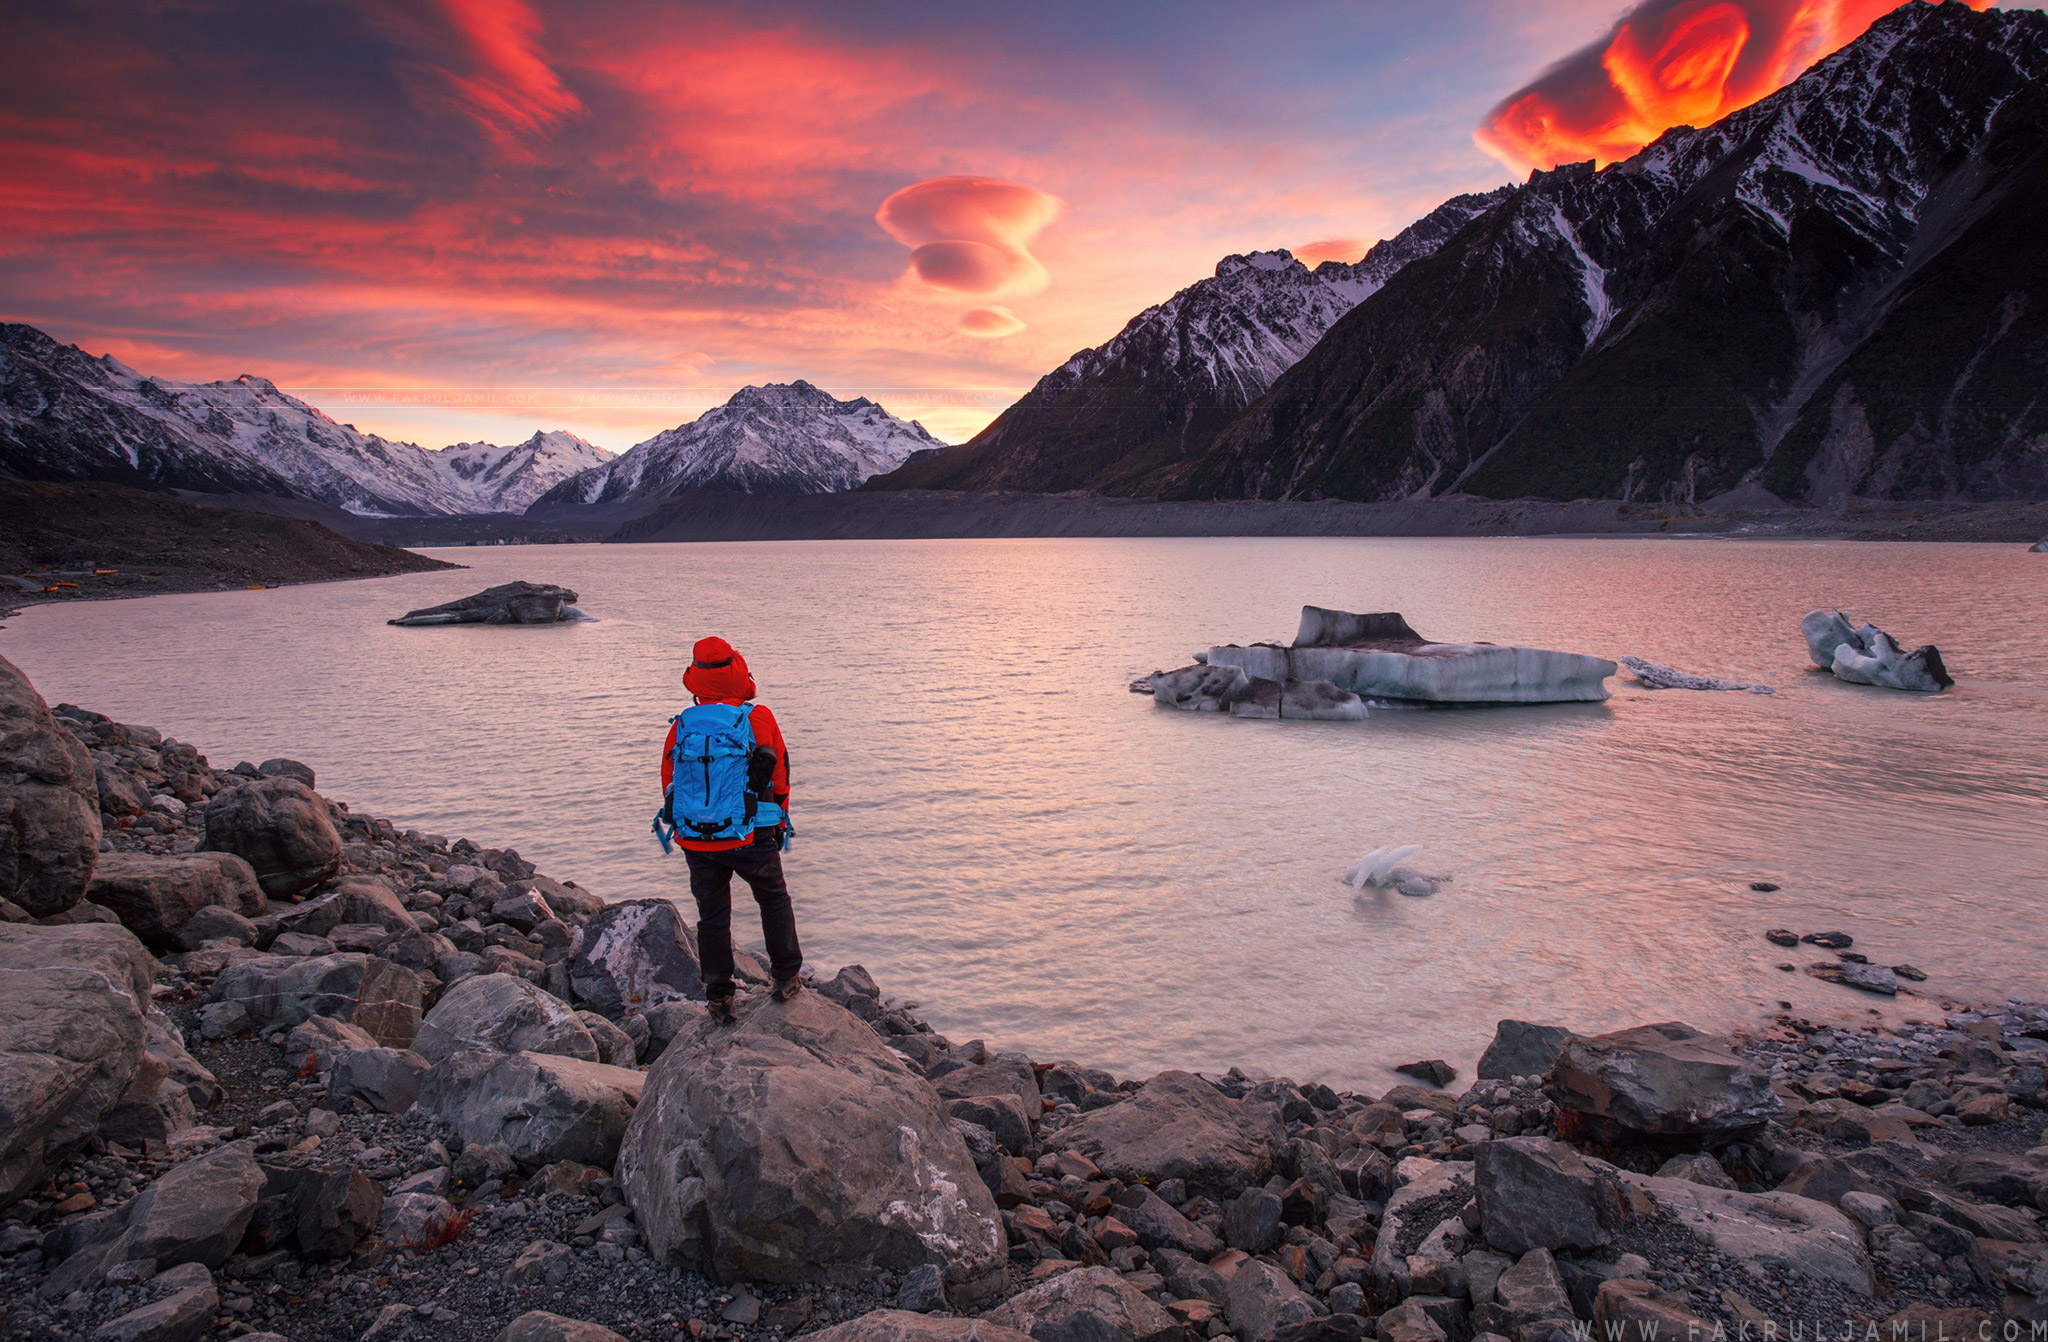 201504 - NZ_Adventurer-at-Tasman-Lake-Sunrise